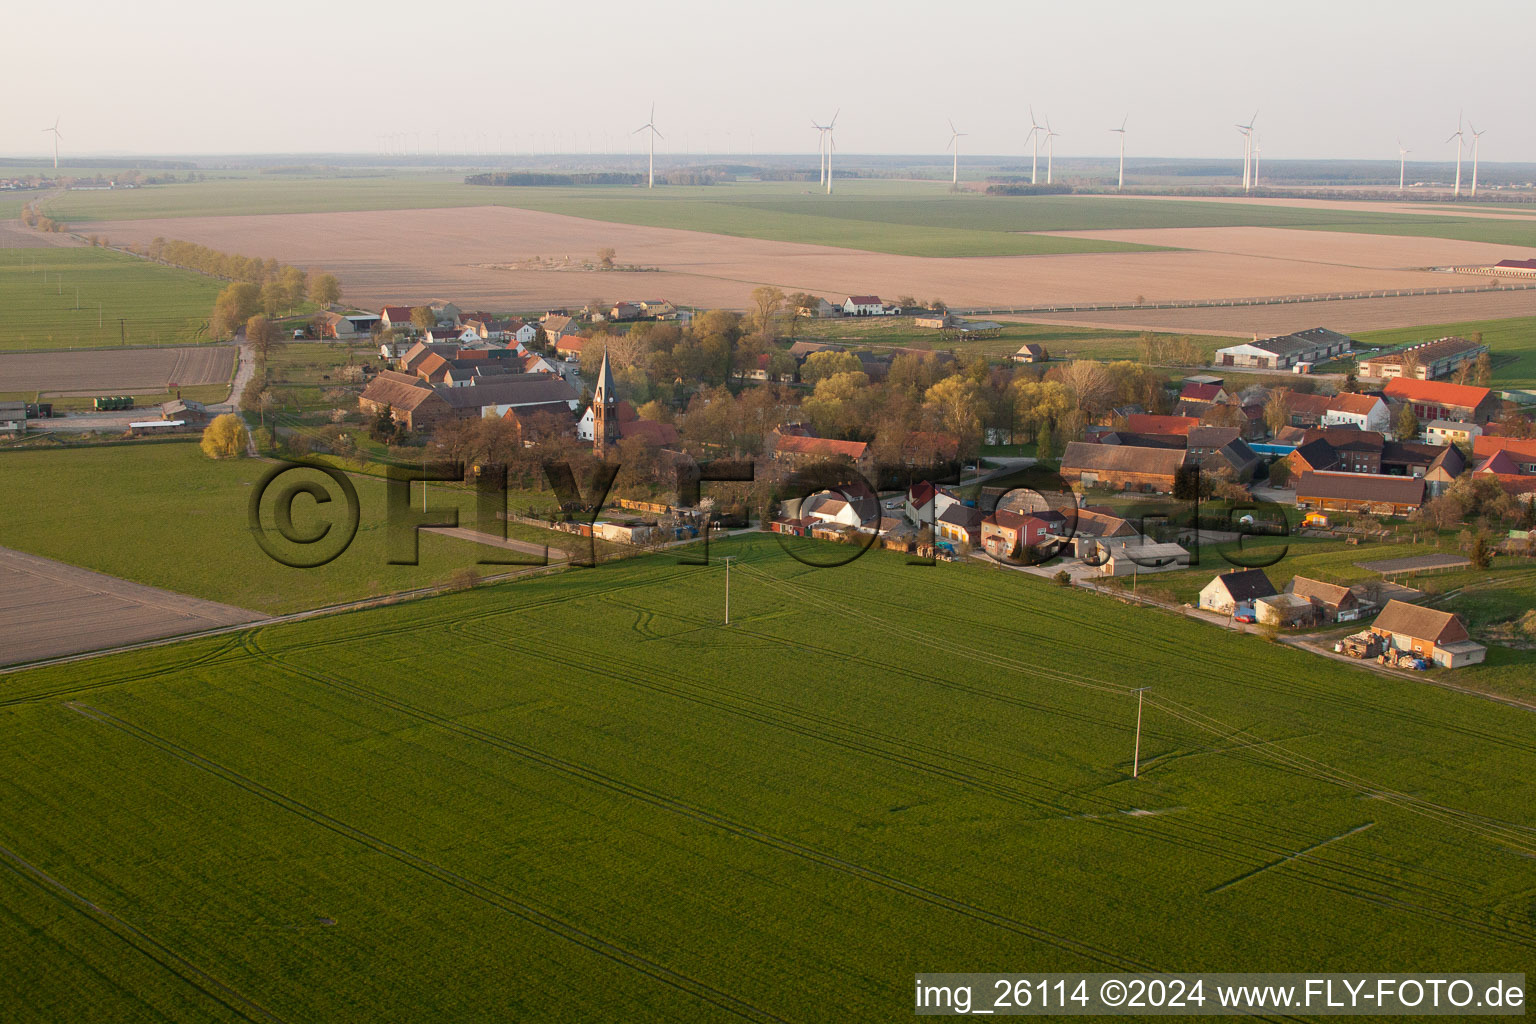 Vue aérienne de Bâtiment de l'église à Borgisdorf à Niederer Fläming dans le département Brandebourg, Allemagne